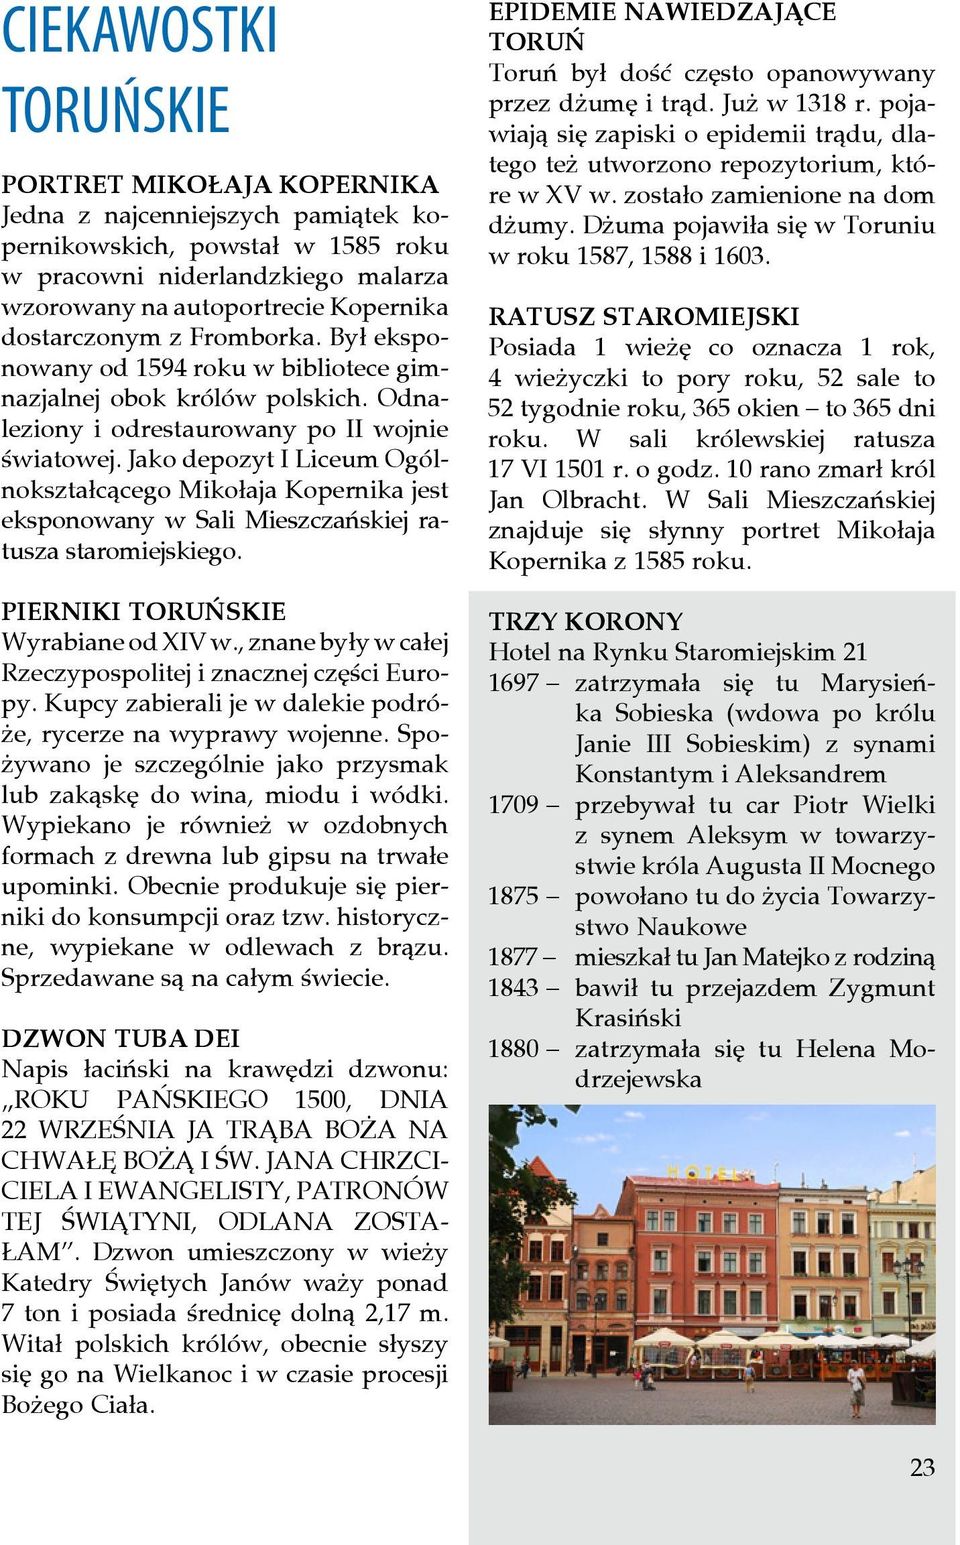 Jako depozyt I Liceum Ogólnokształcącego Mikołaja Kopernika jest eksponowany w Sali Mieszczańskiej ratusza staromiejskiego. PIERNIKI TORUŃSKIE Wyrabiane od XIV w.